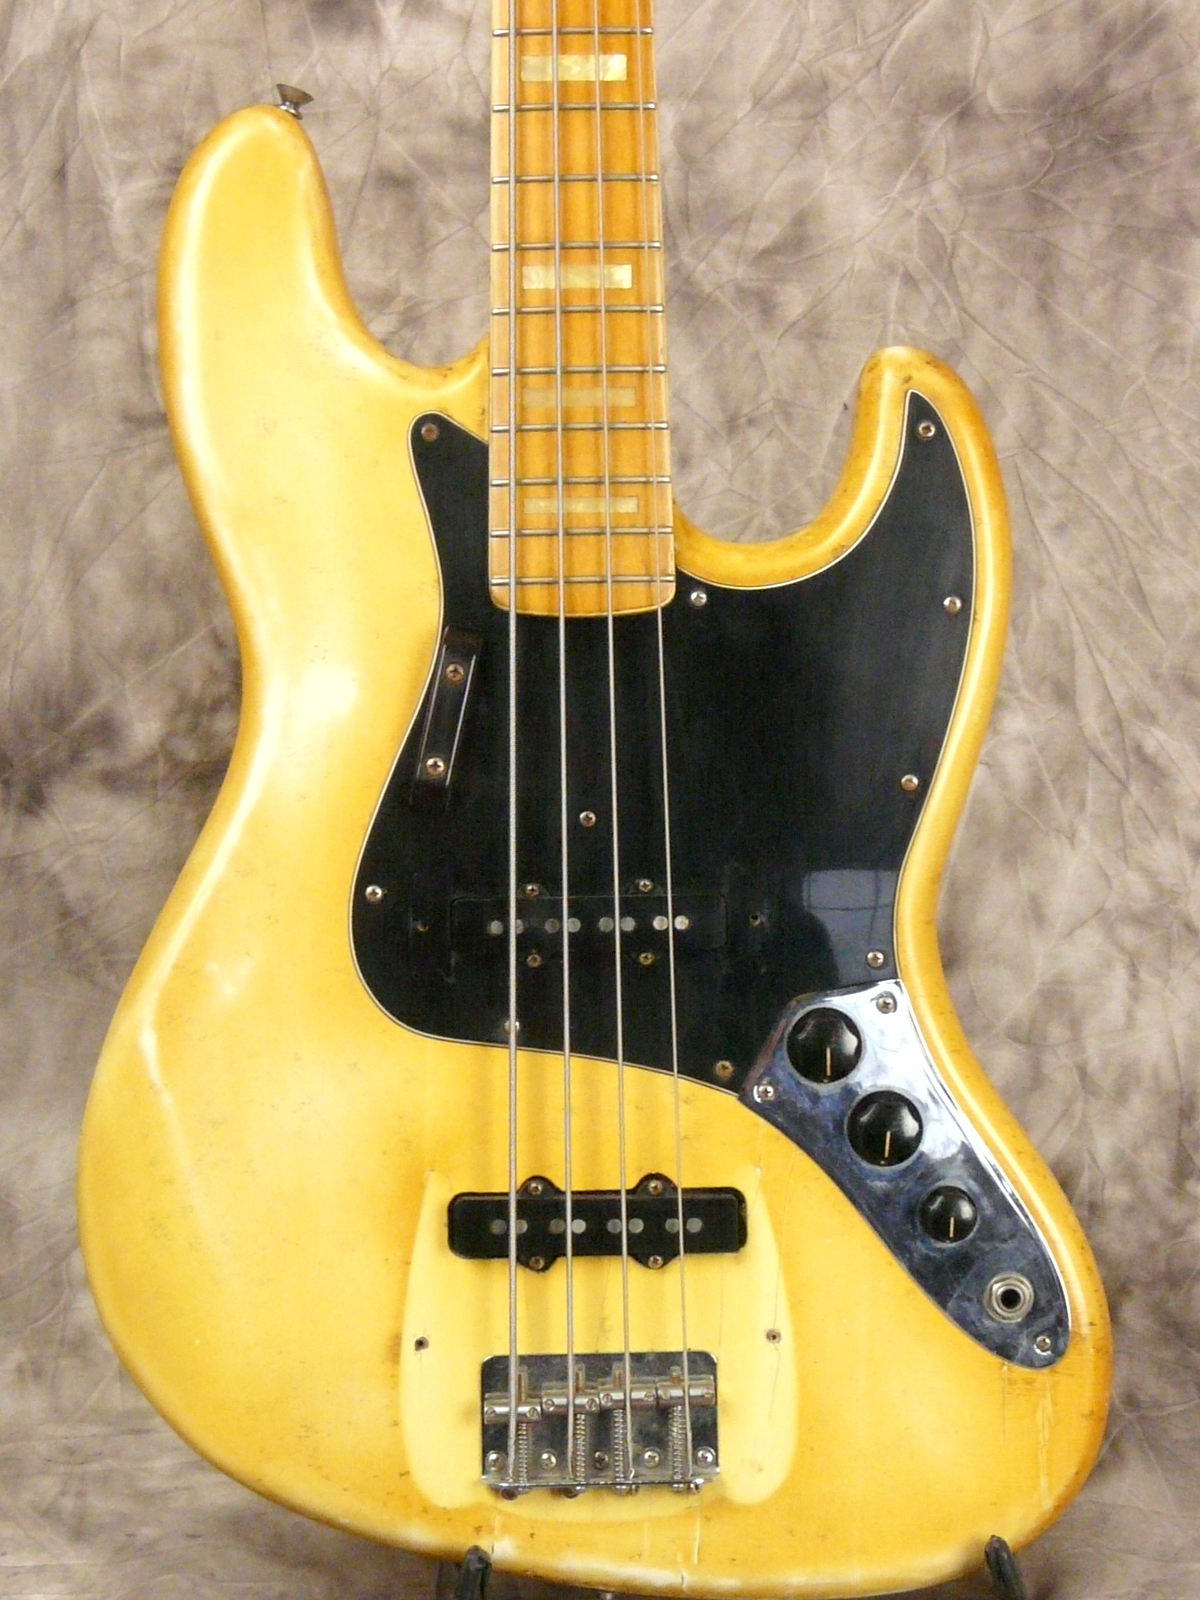 Fender_Jazz_bass-1976-olympic_white-002.JPG